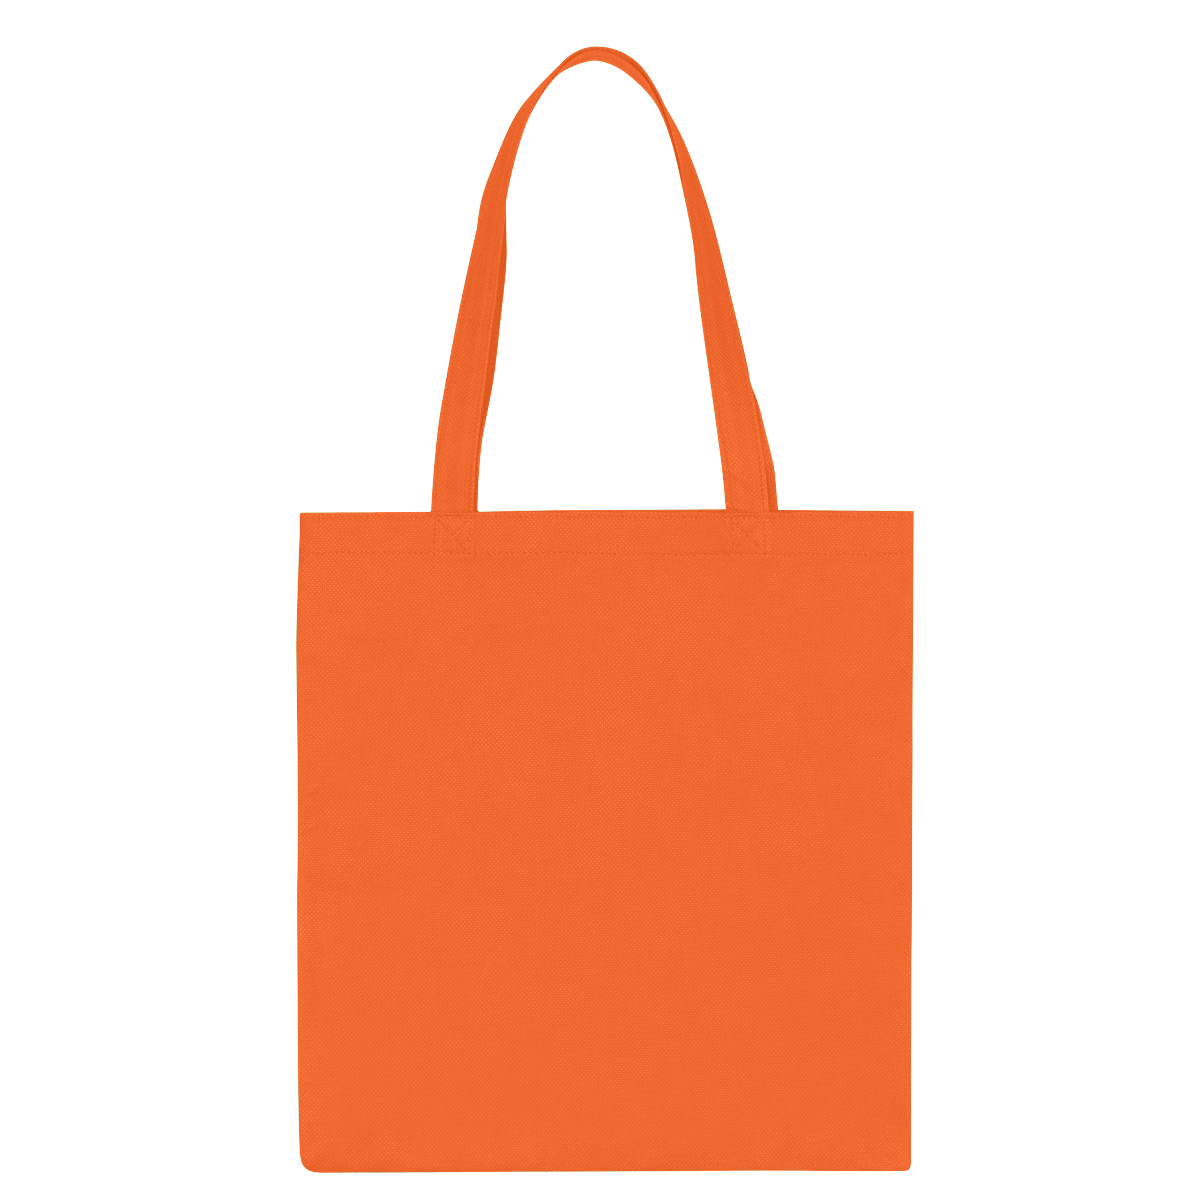 Printed Non-Woven Economy Tote Bag | Bags - Queensboro